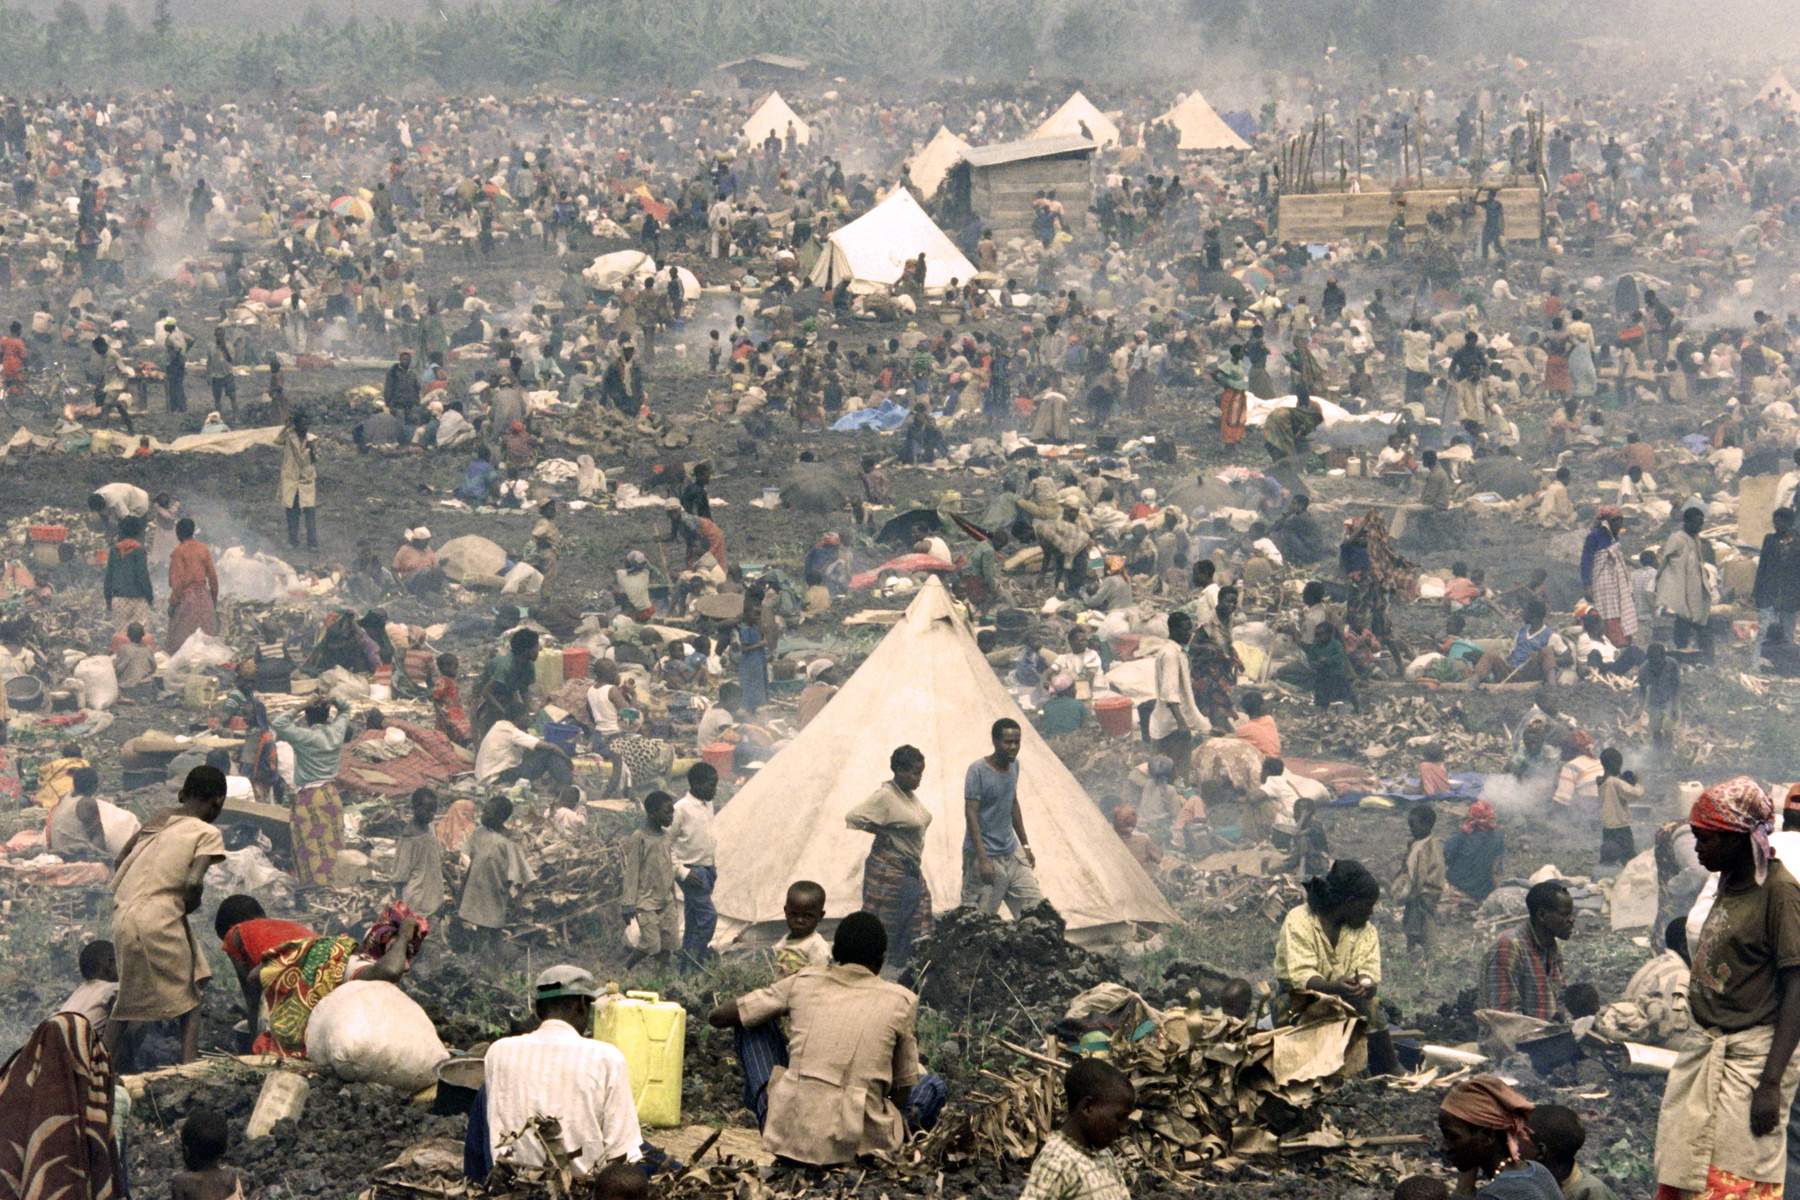 A béke persze az egységkormány létrejötte után még nem állt helyre: a tuszik elleni népirtás után hutuk százezrei menekültek el az országból, ráerősítve a szomszédos Burundiban is zajló hutu-tuszi háborúra. Az 1995-ös képen már Burundi egyik menekülttáborából menekülnek a hutuk Tanzániába, ahova egy évvel korábban még tuszik százezrei menekültek.